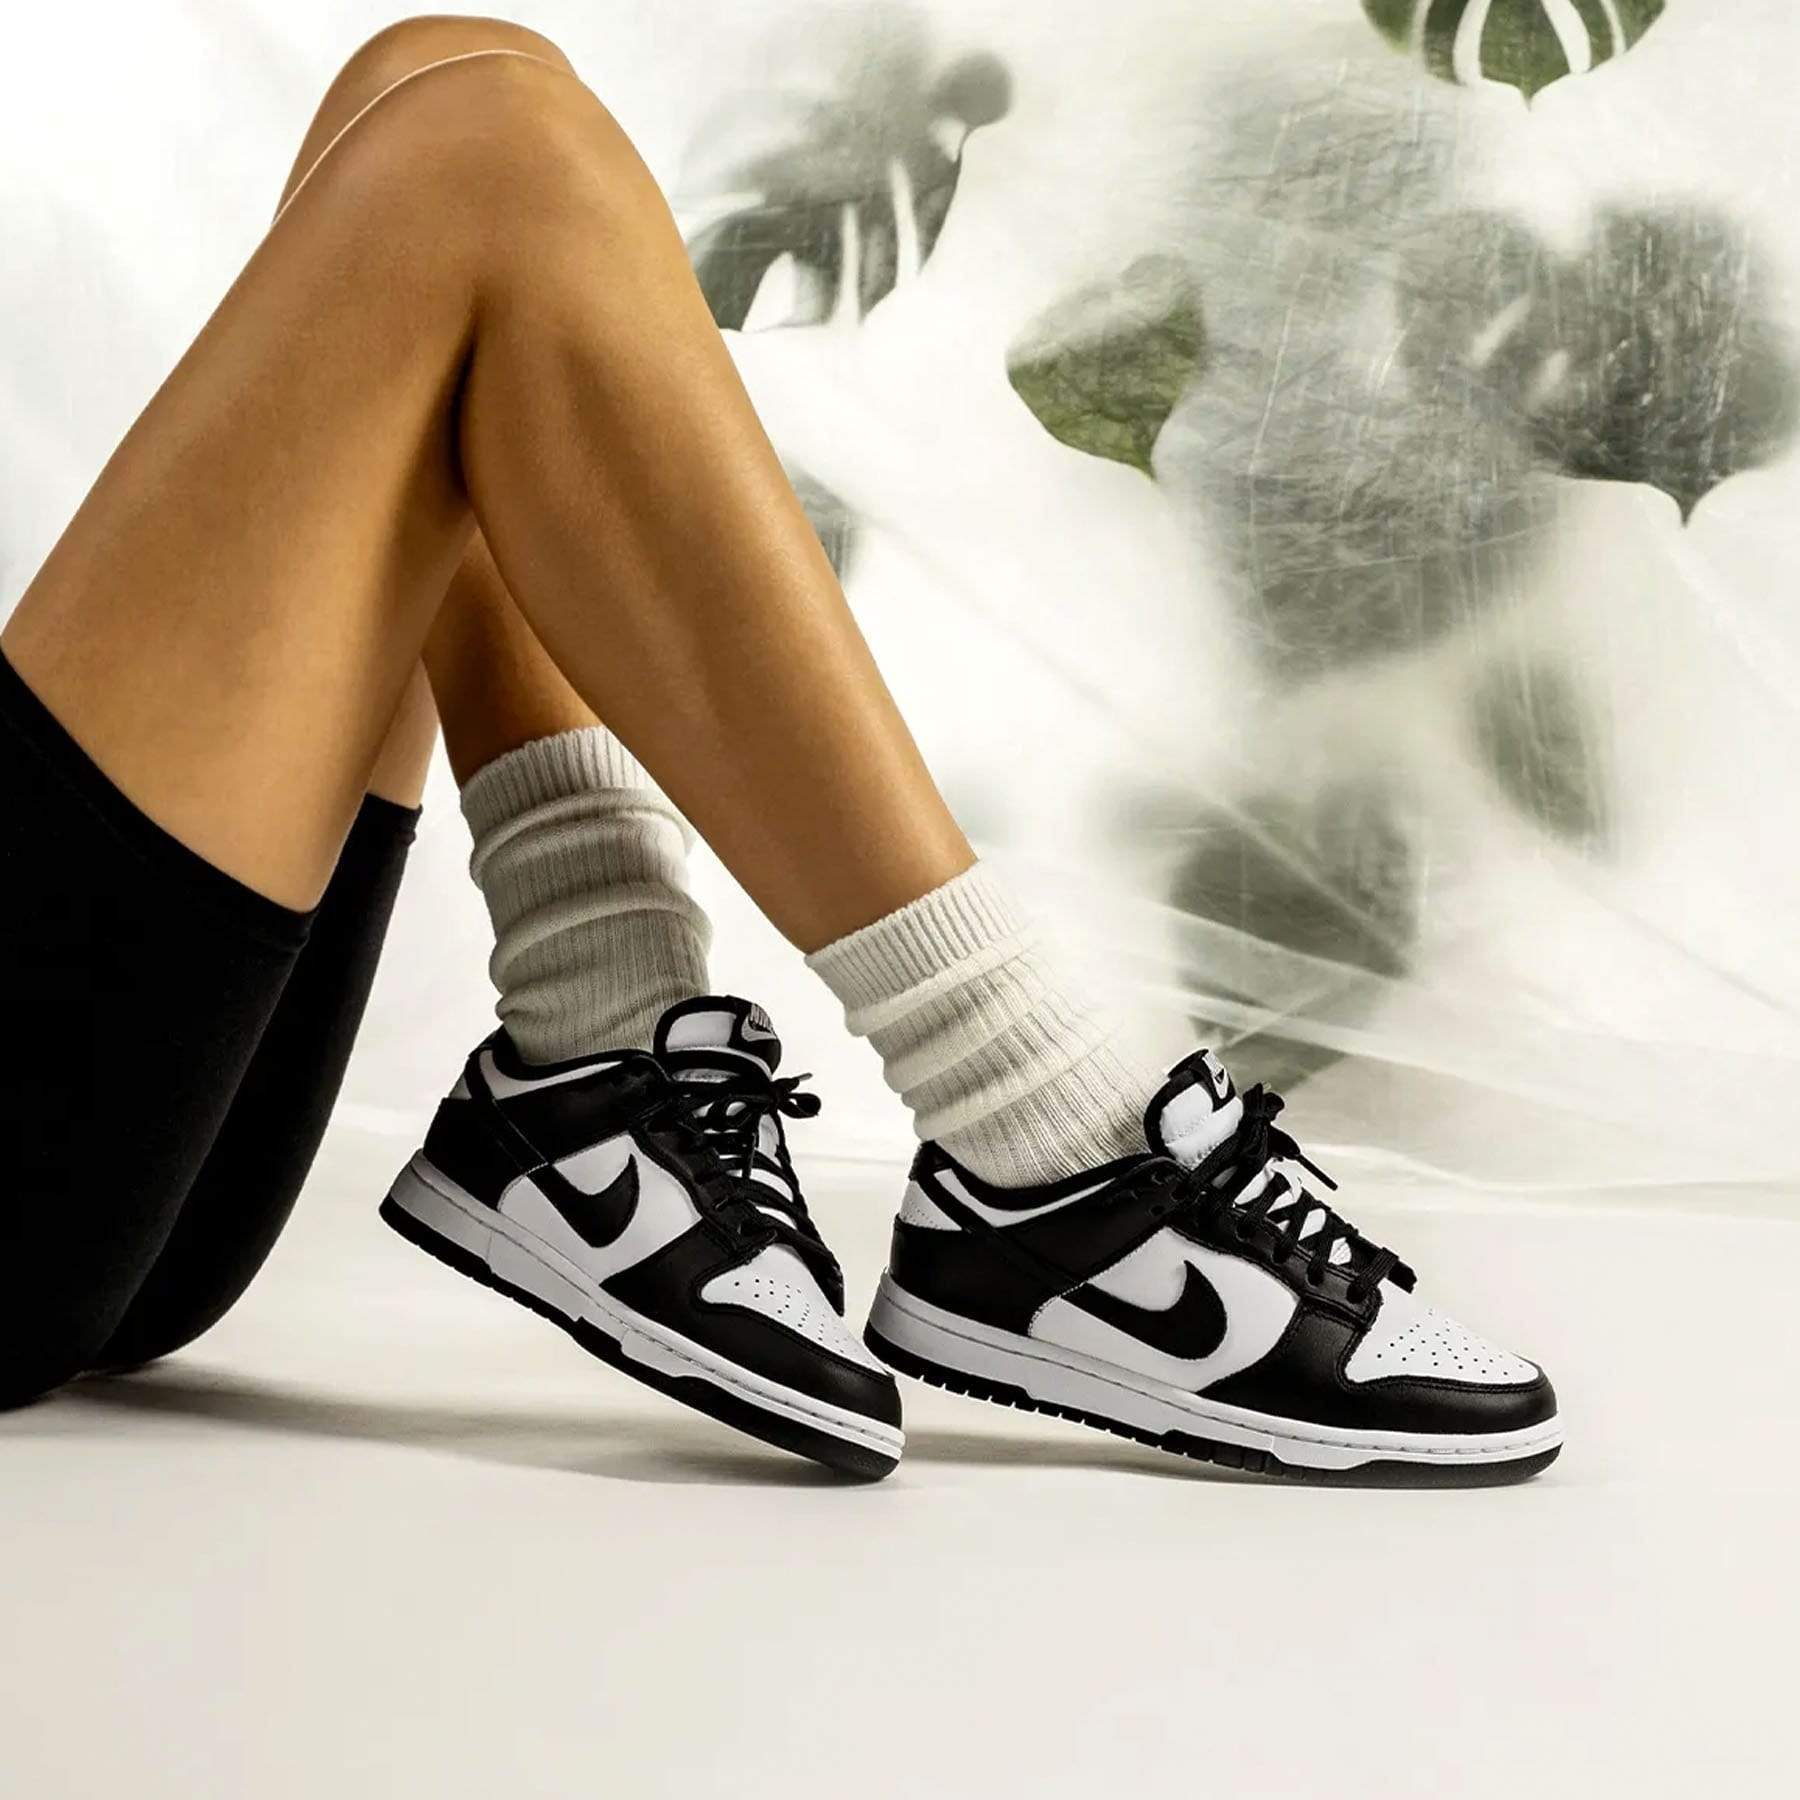 Nike Dunk Low Wmns 'Black White' — Kick Game